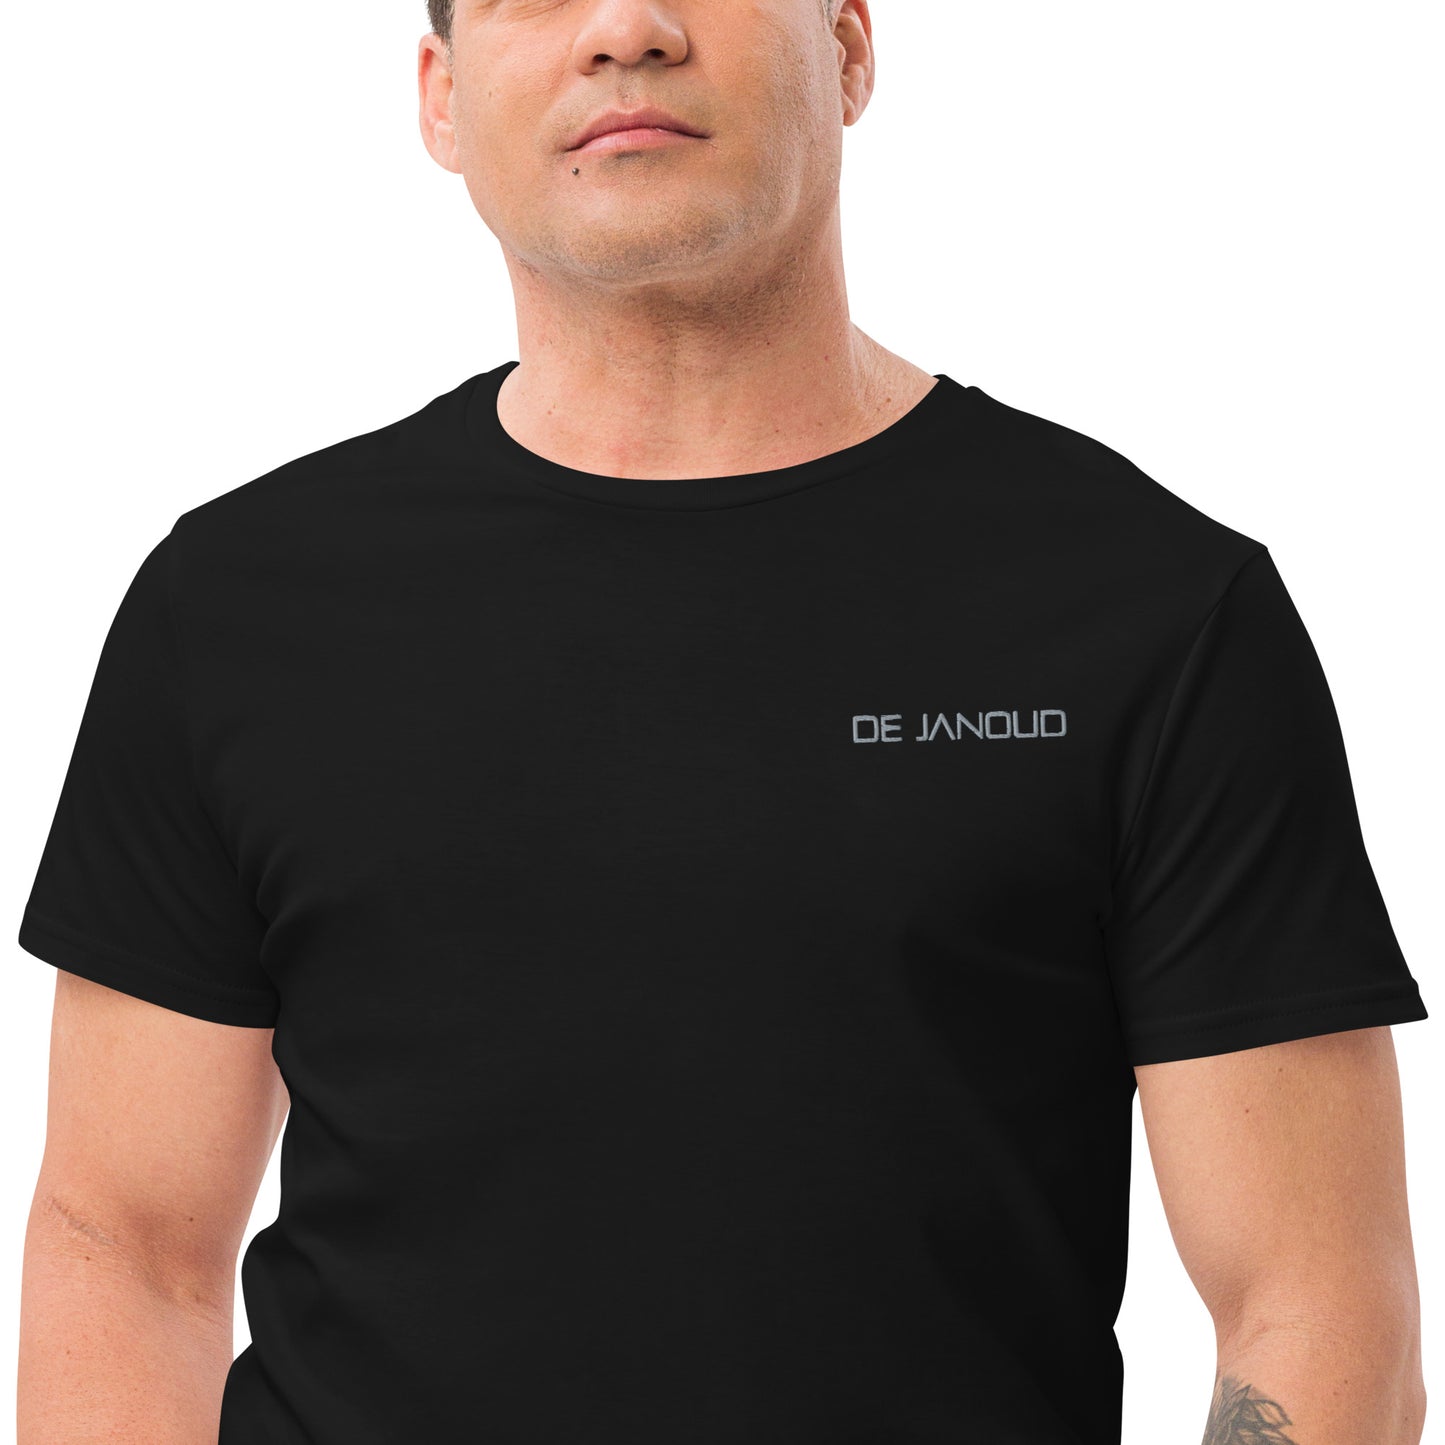 De Janoud - Embroidered Premium Cotton Men T-Shirt